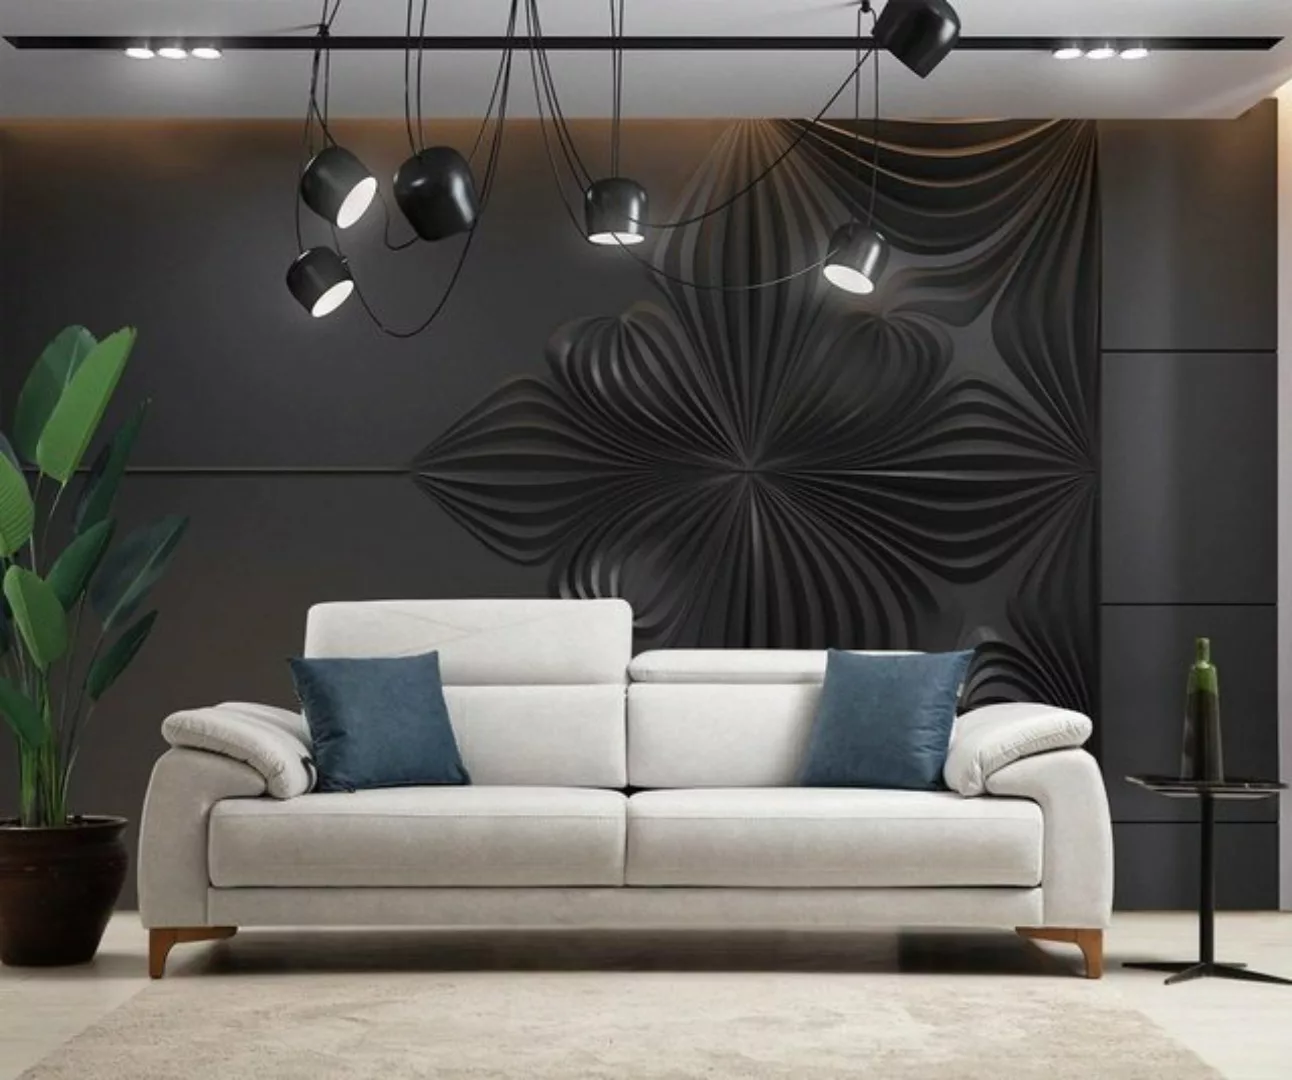 JVmoebel 3-Sitzer Grau Sofa Wohnzimmer Luxus Polstersofa Design Modern Möbe günstig online kaufen